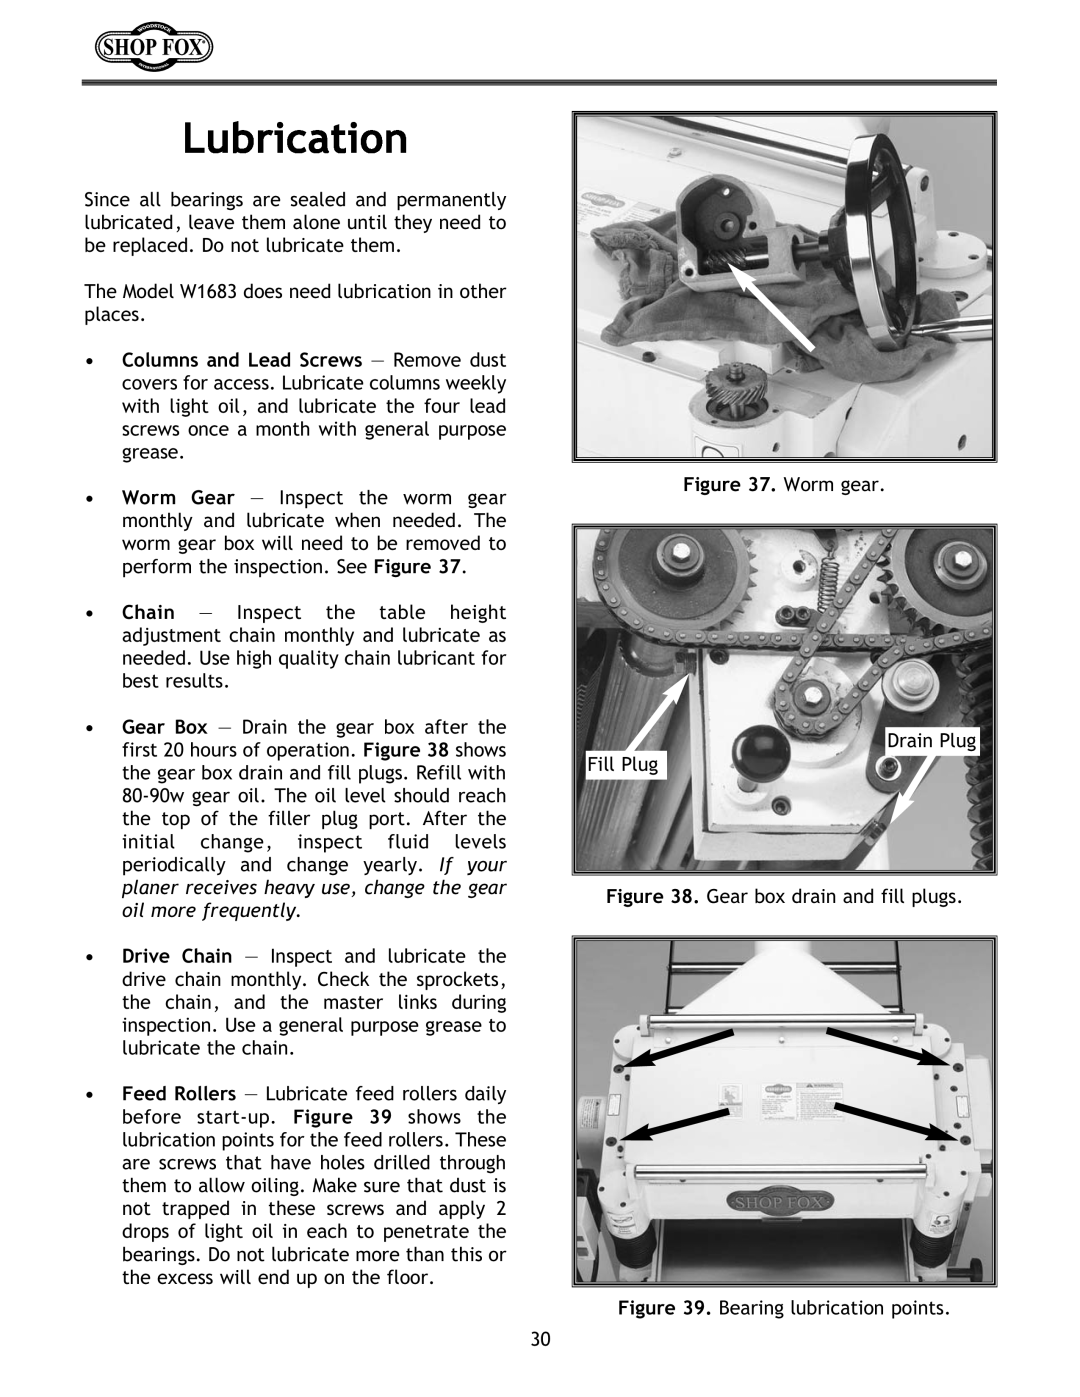 Woodstock W1683 instruction manual Lubrication, Worm gear 